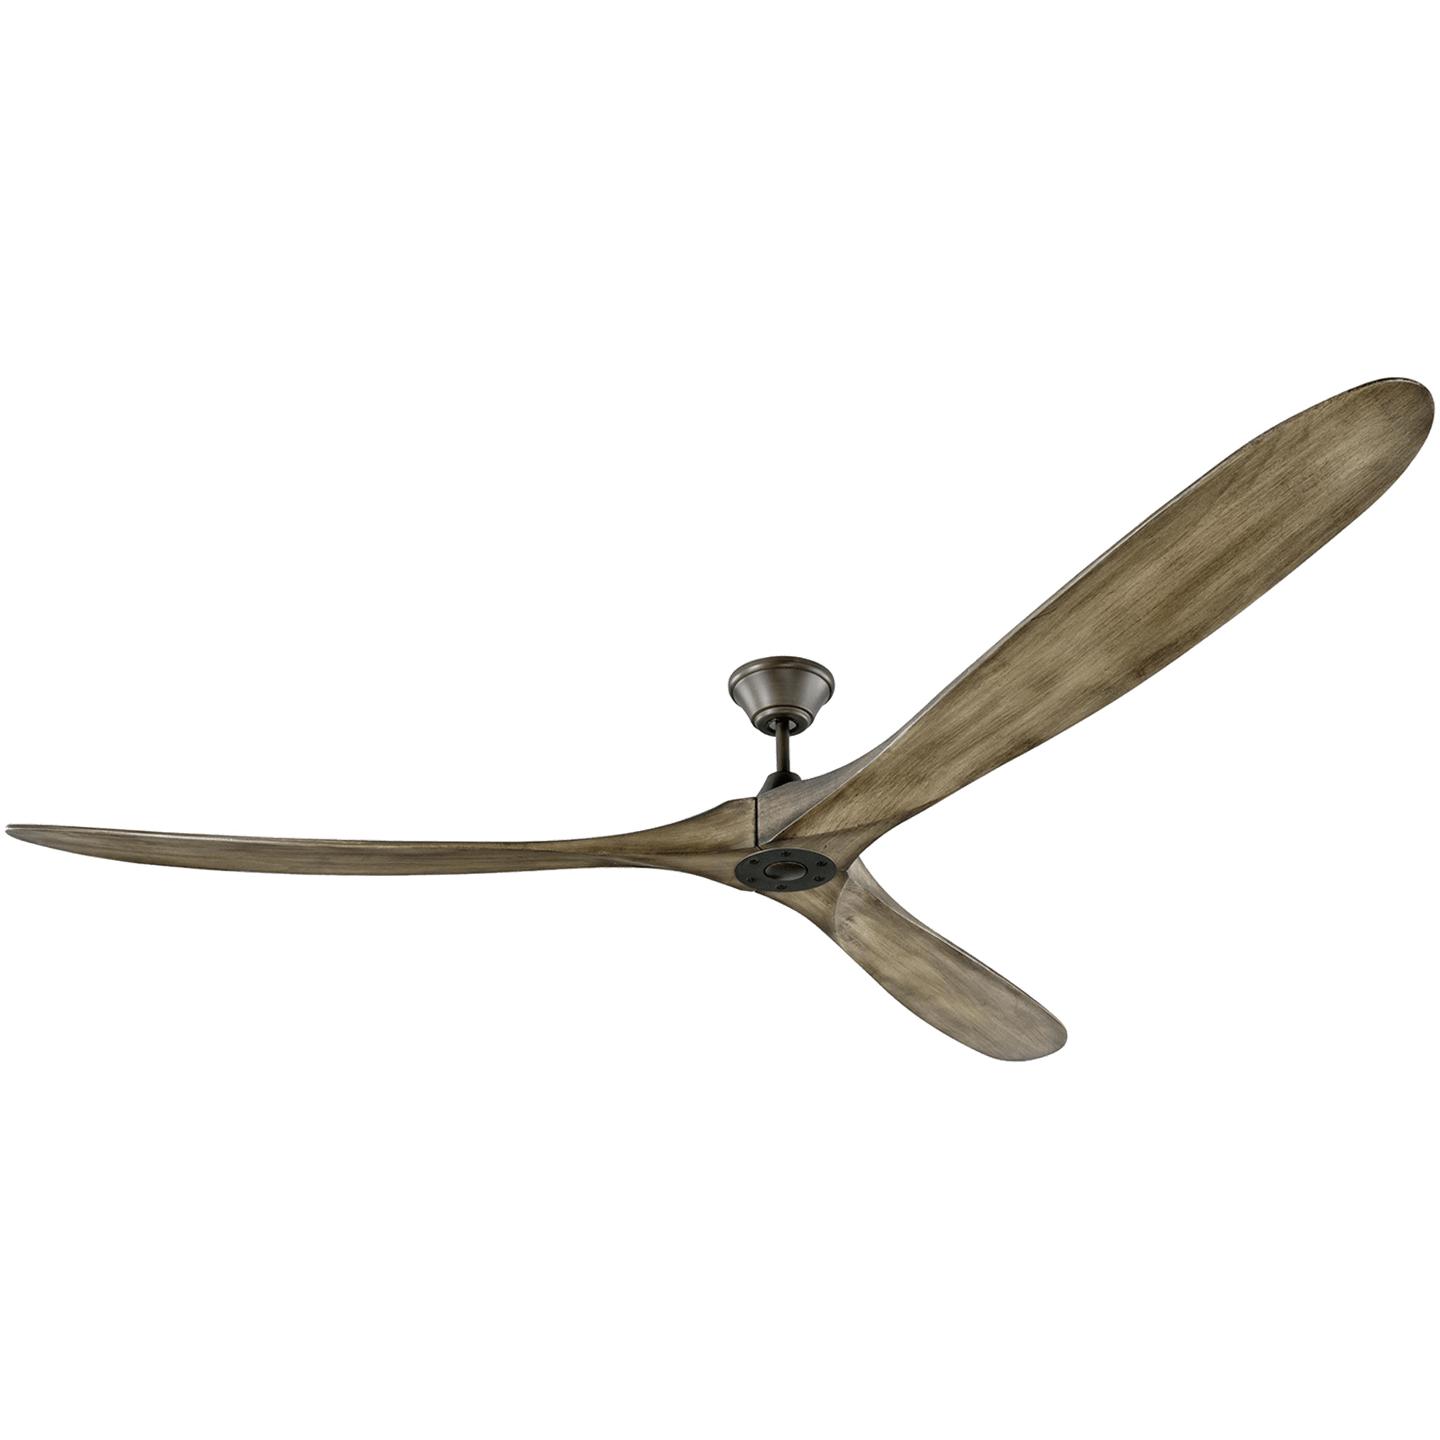 Купить Потолочный вентилятор Maverick 88" Ceiling Fan в интернет-магазине roooms.ru